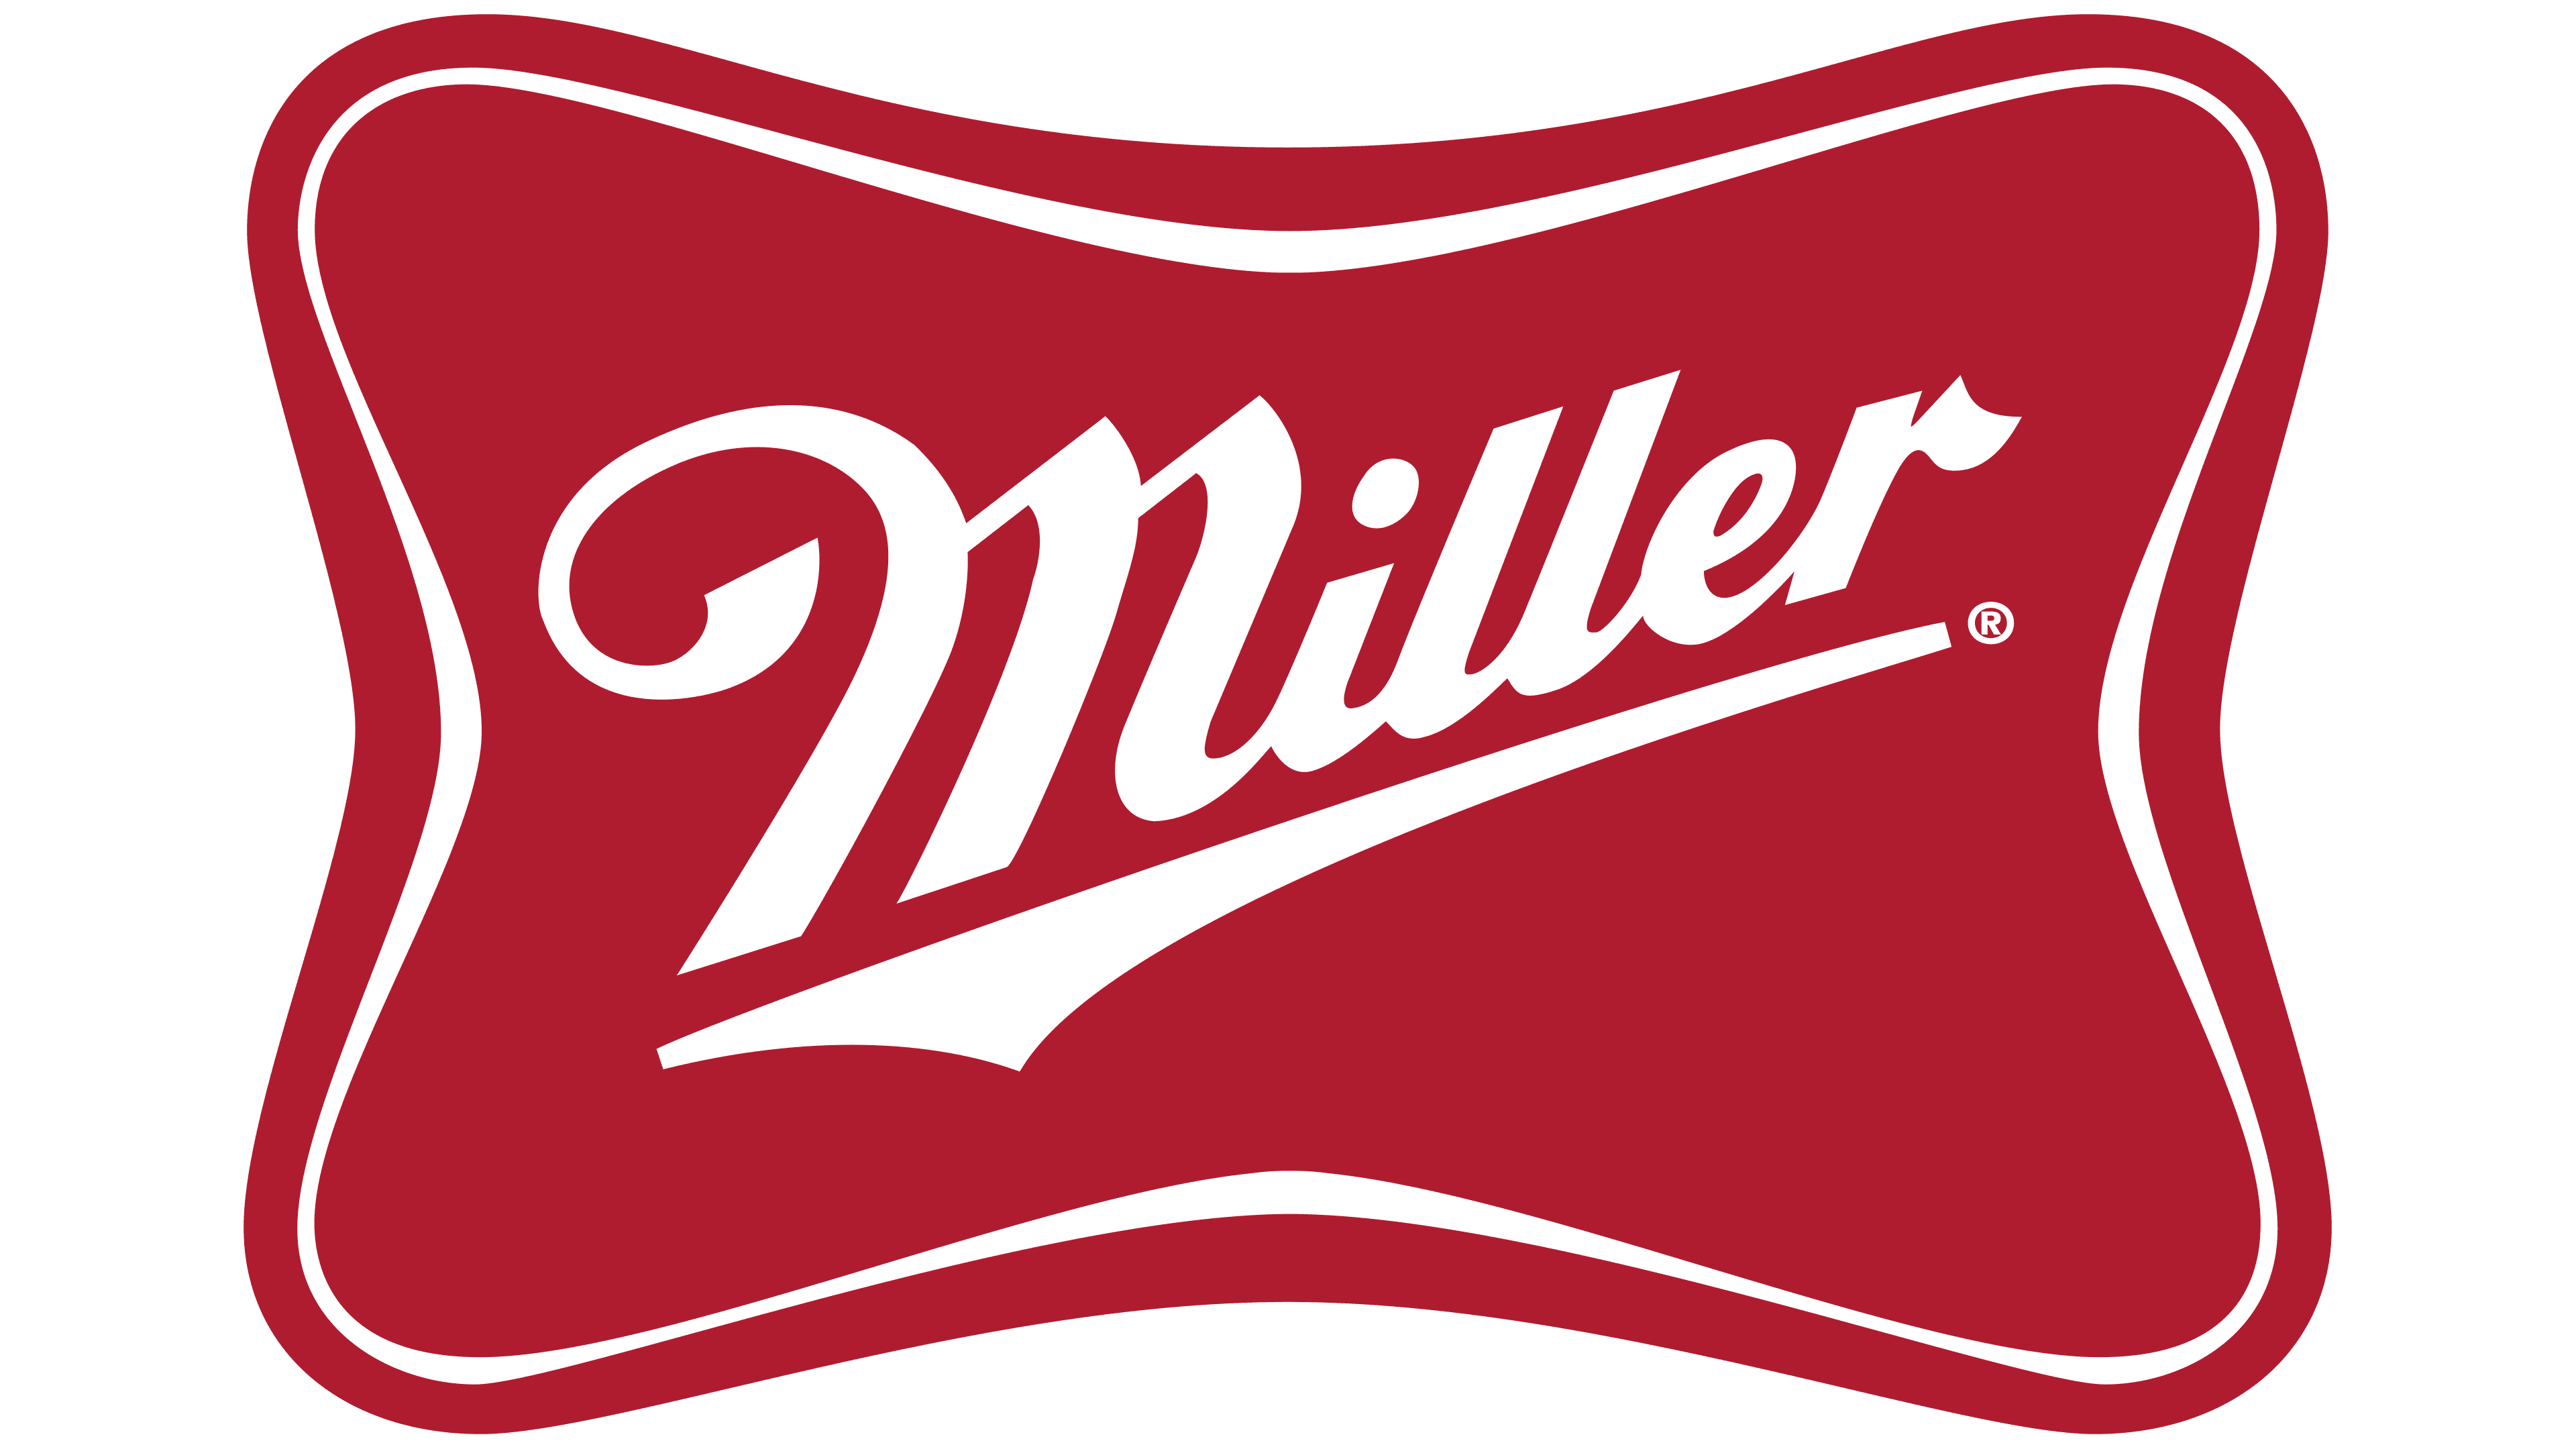 Miller Beer Logo